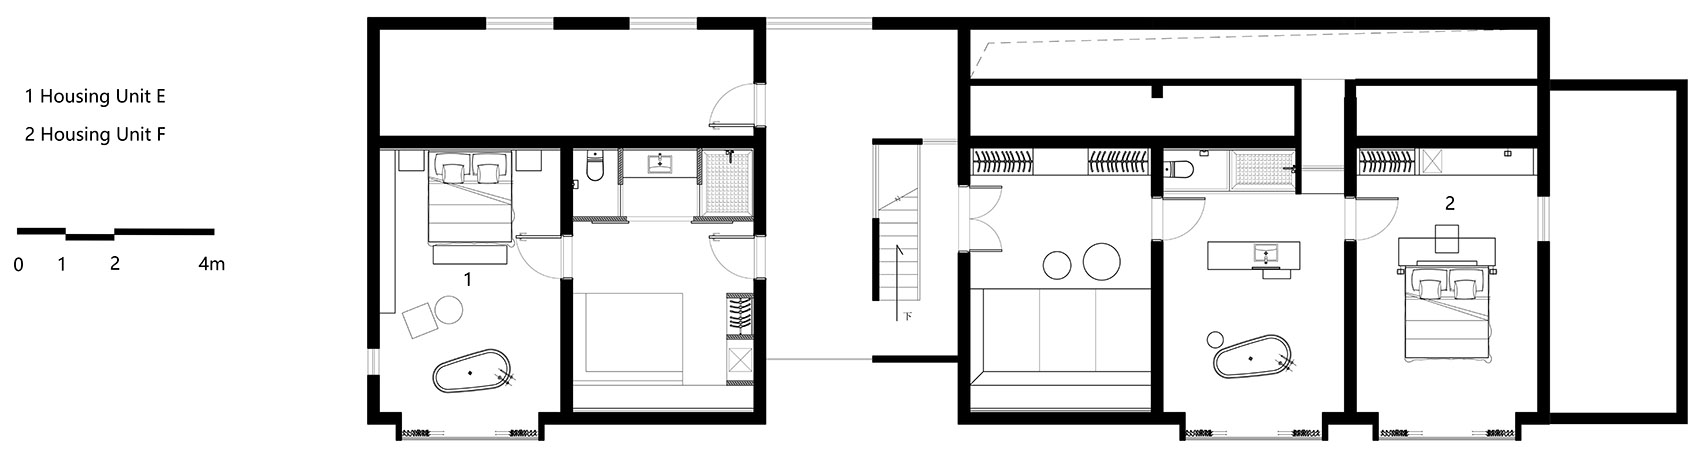 39-HOUSE-OF-MO_DPAA-Design-Studio.jpg